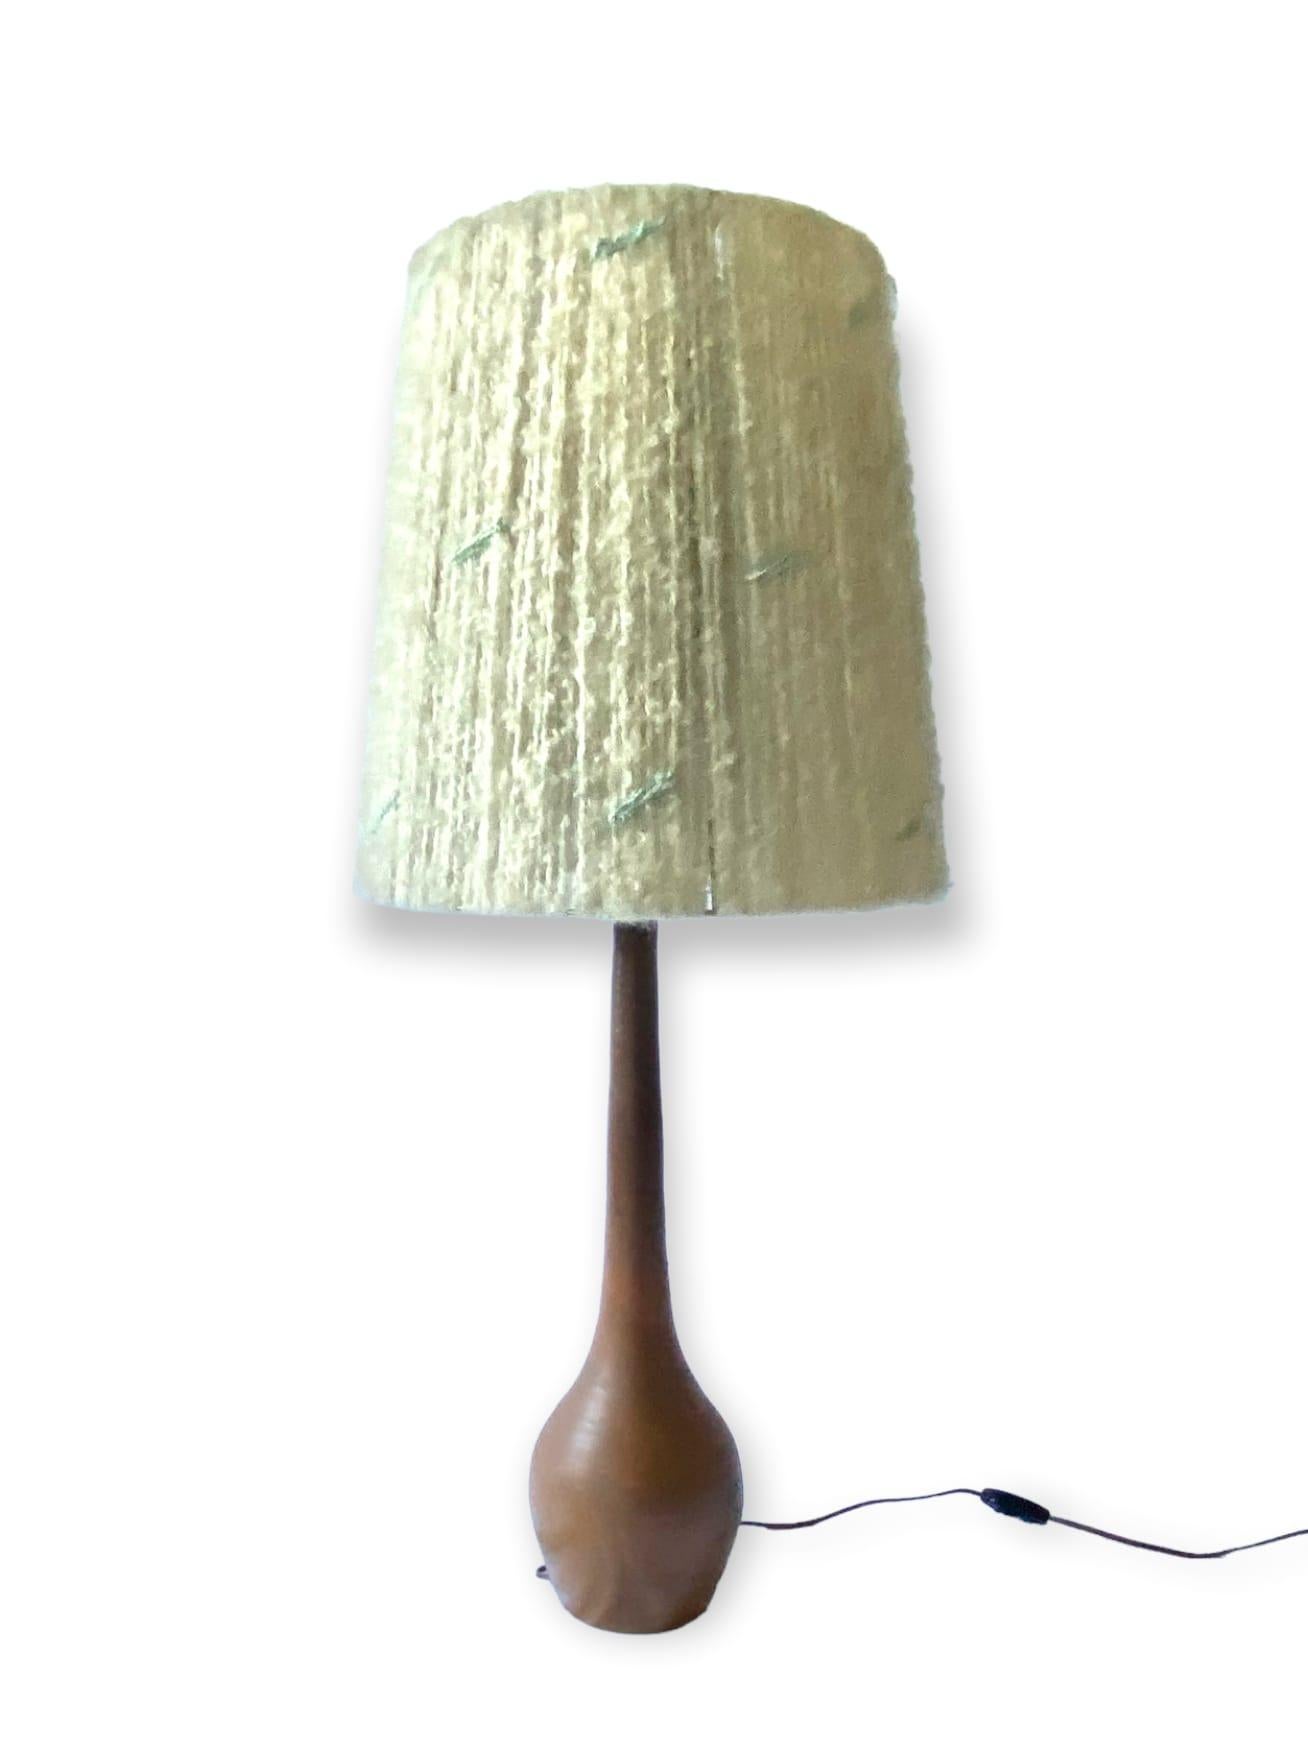 Midcentury Monumental Glazed Terracotta Table Lamp, France, 1950s For Sale 10